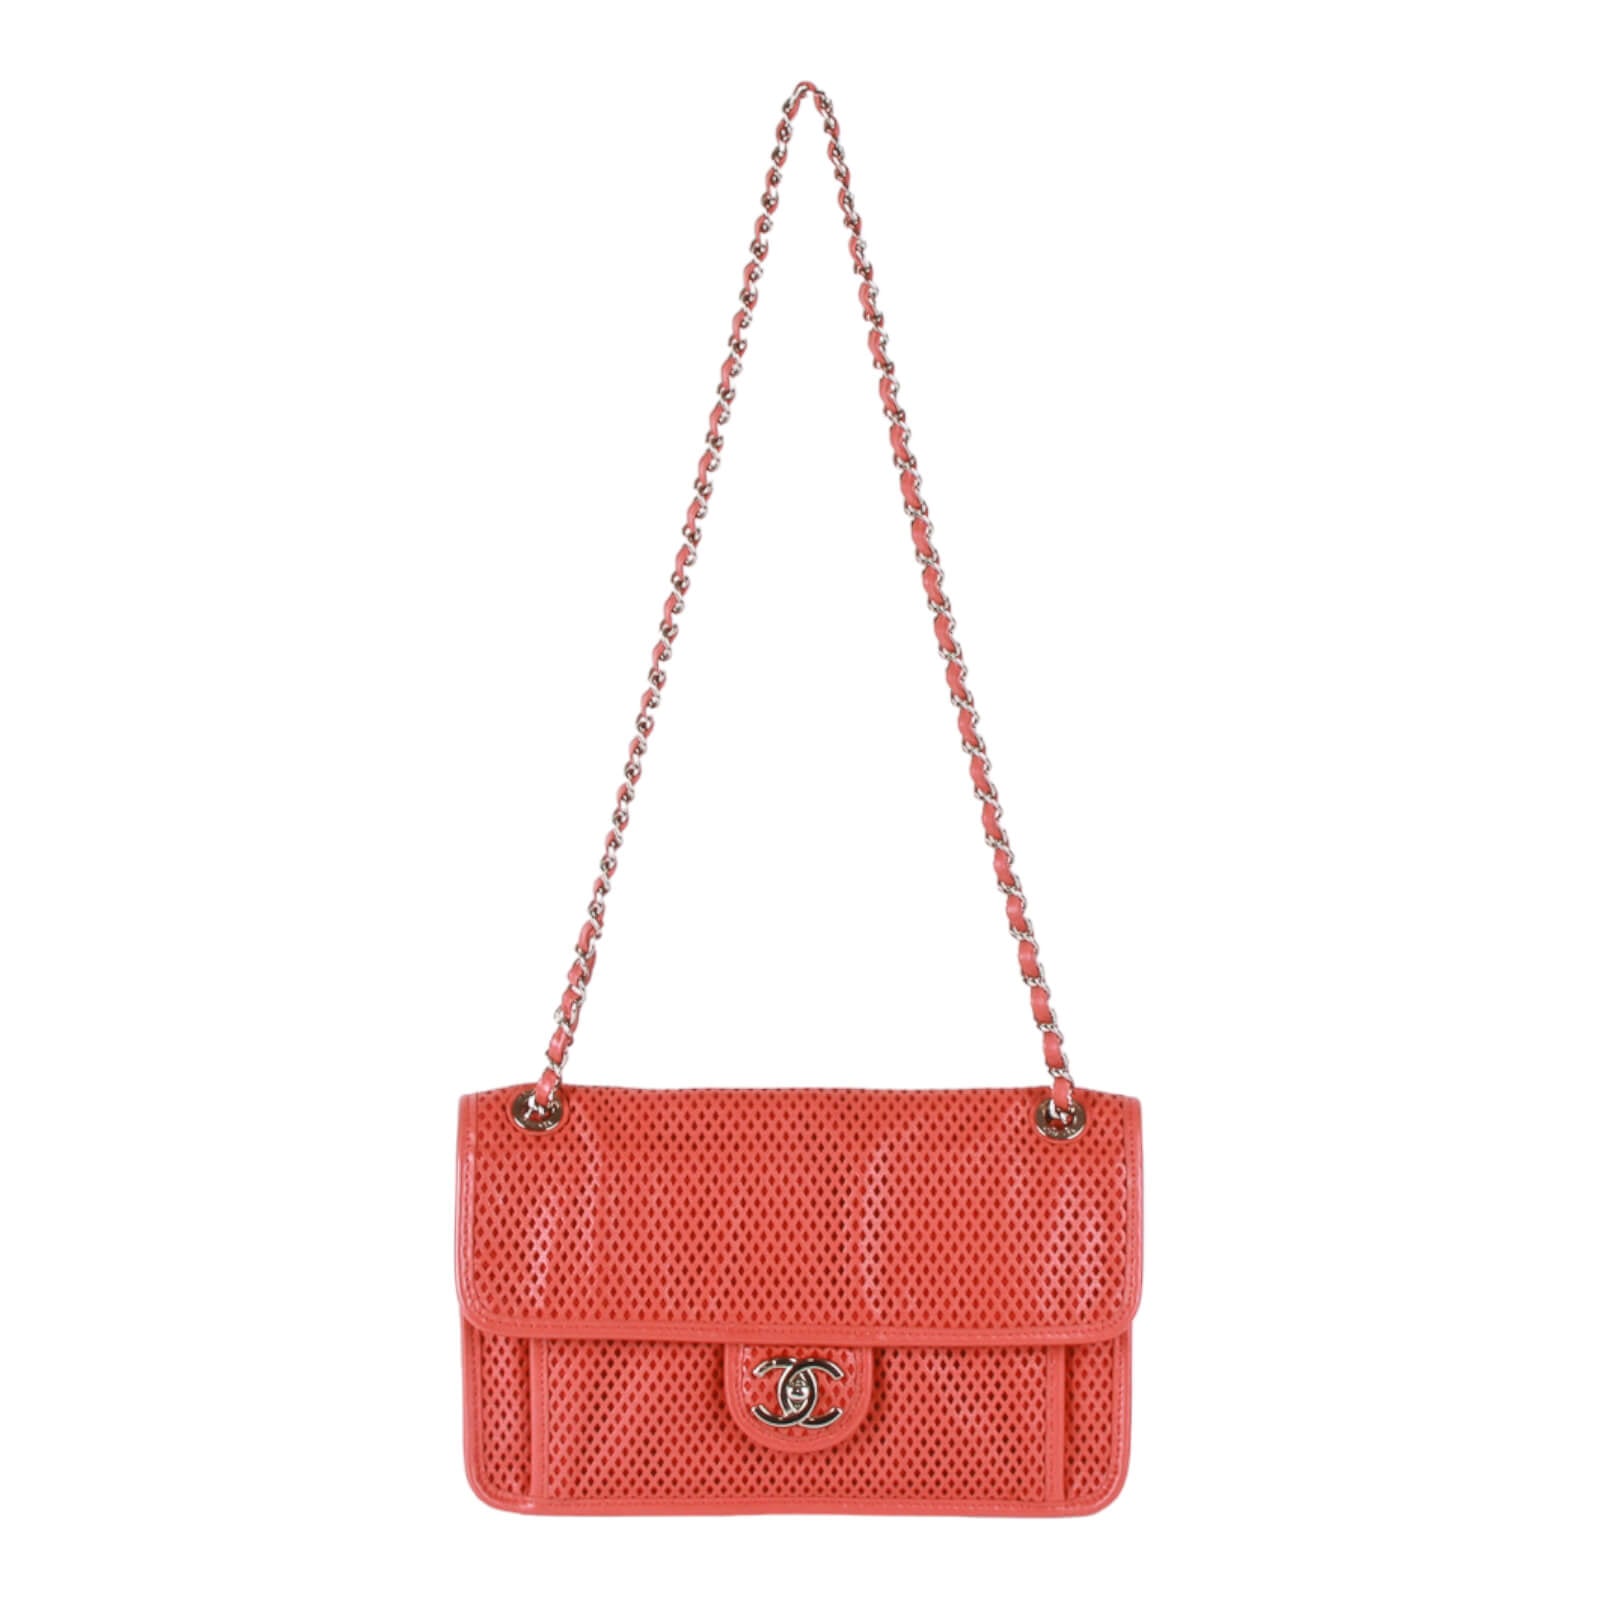 Authentic Chanel Red Leather Matelassé Chain Shoulder Bag